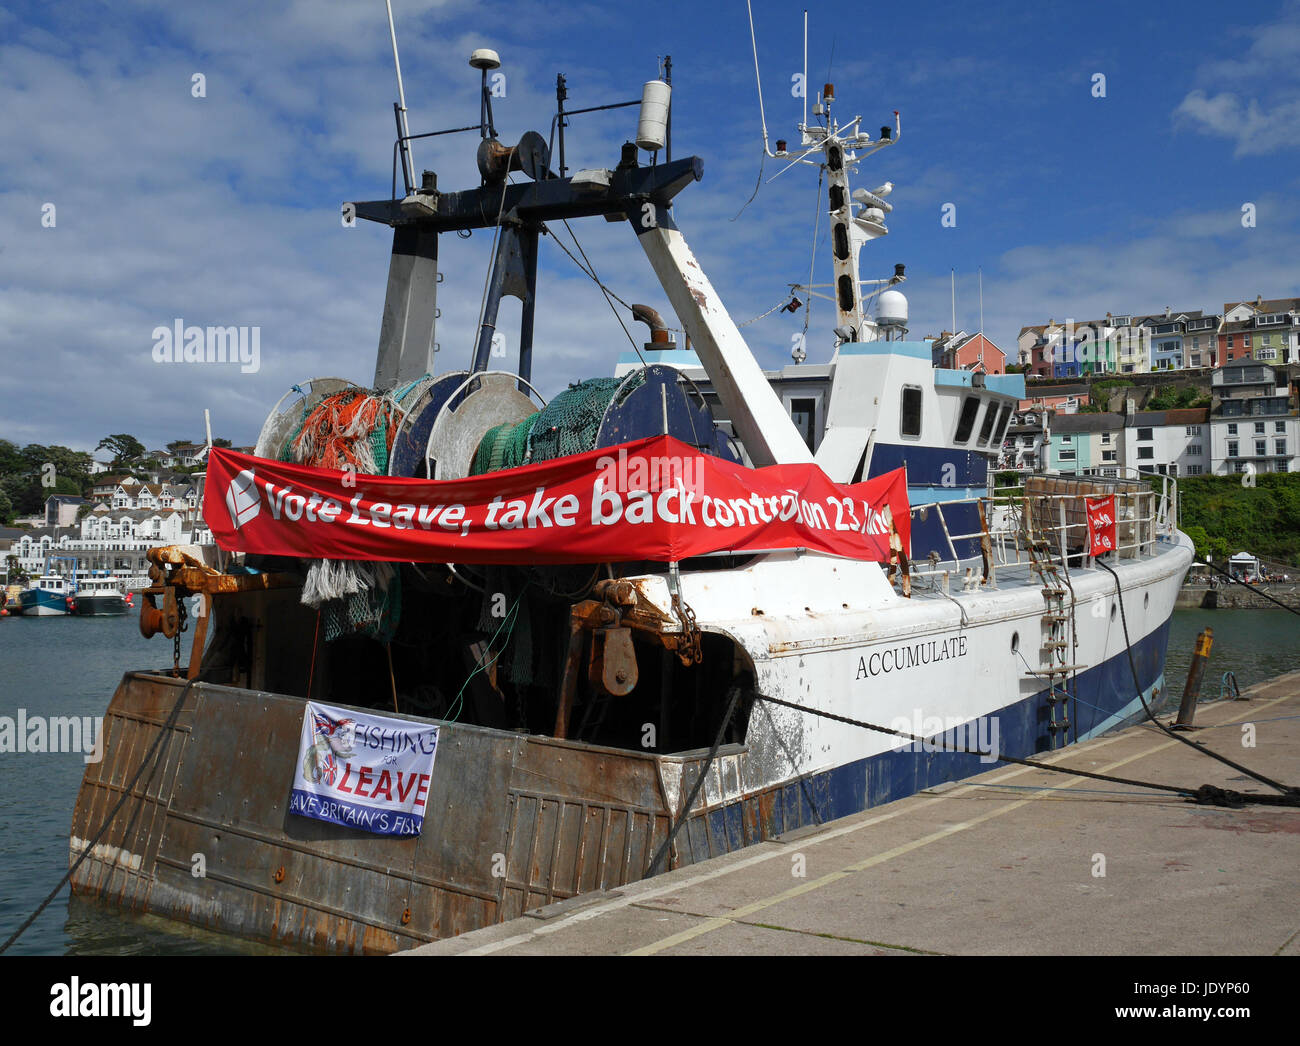 Angeln Schiff vor Anker im Hafen von Brixham mit Abstimmung verlassen Banner während des EU-Referendums 2016, Brixham, Devon, England, Vereinigtes Königreich Stockfoto